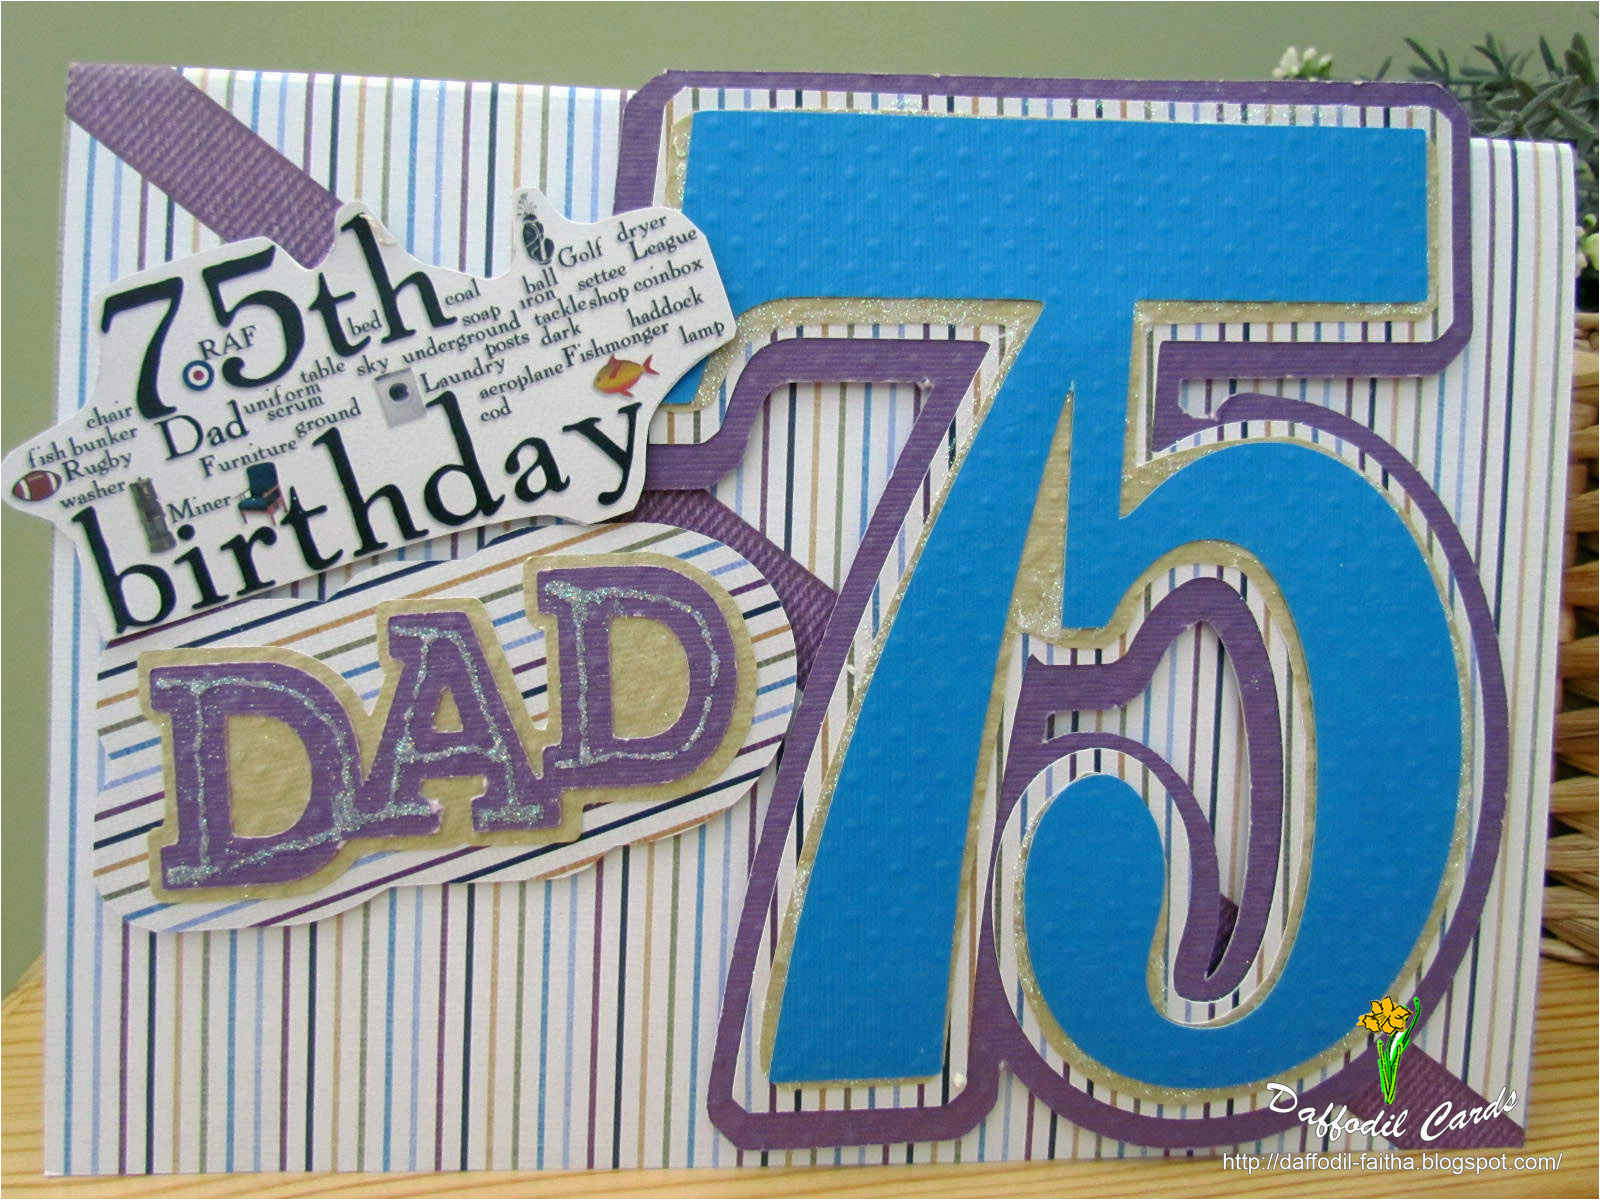 dad-75th-birthday-card-daffodil-cards-75th-birthday-birthdaybuzz